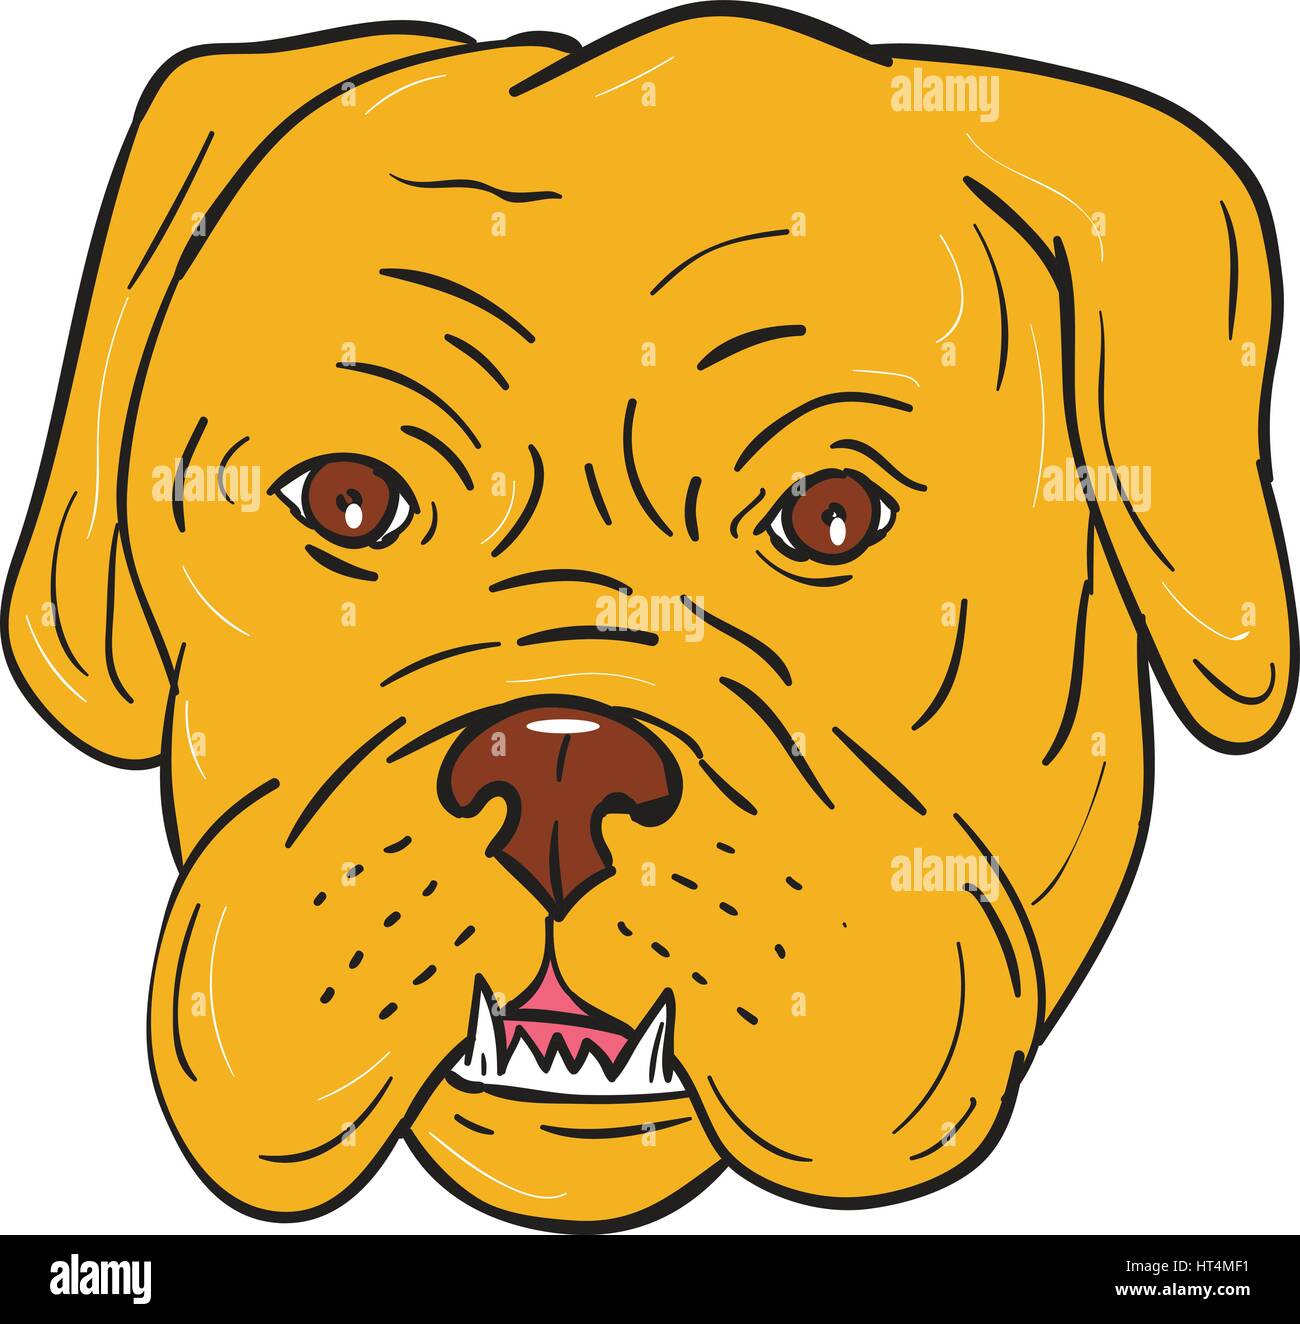 Illustration d'un Dogue de Bordeaux, Dogue de Bordeaux, Dogue de Bordeaux ou en français, un grand chien de race Mastiff français l'un des plus anciens chien français Illustration de Vecteur